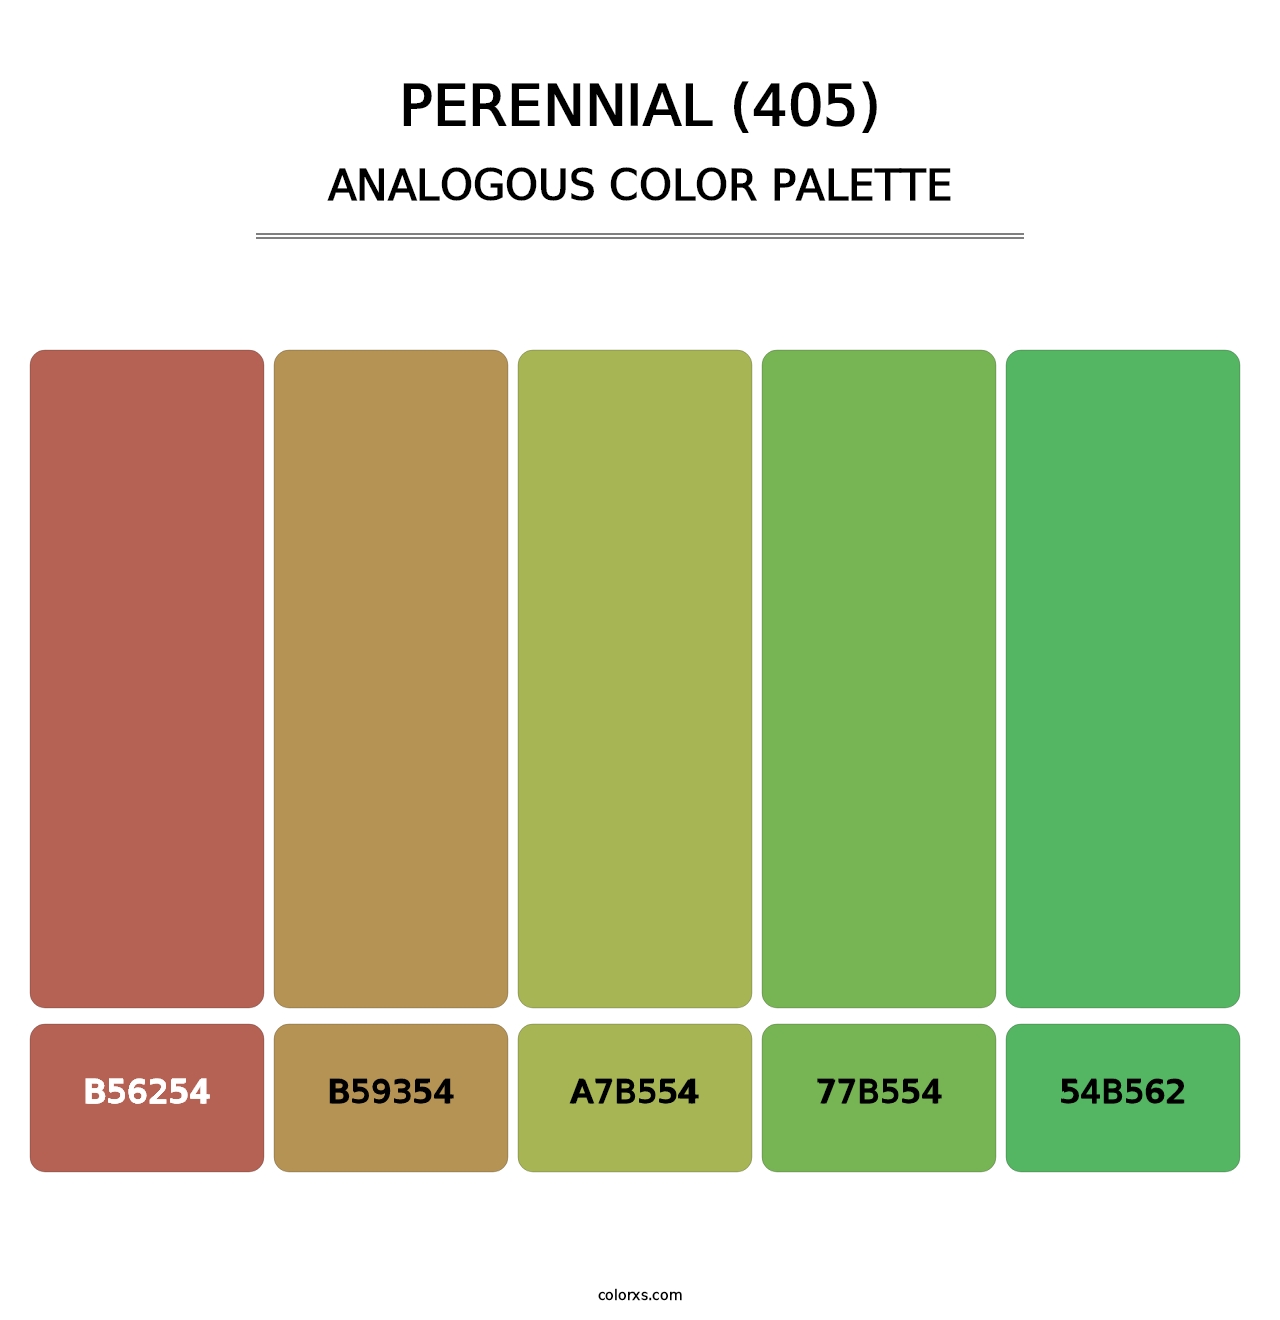 Perennial (405) - Analogous Color Palette